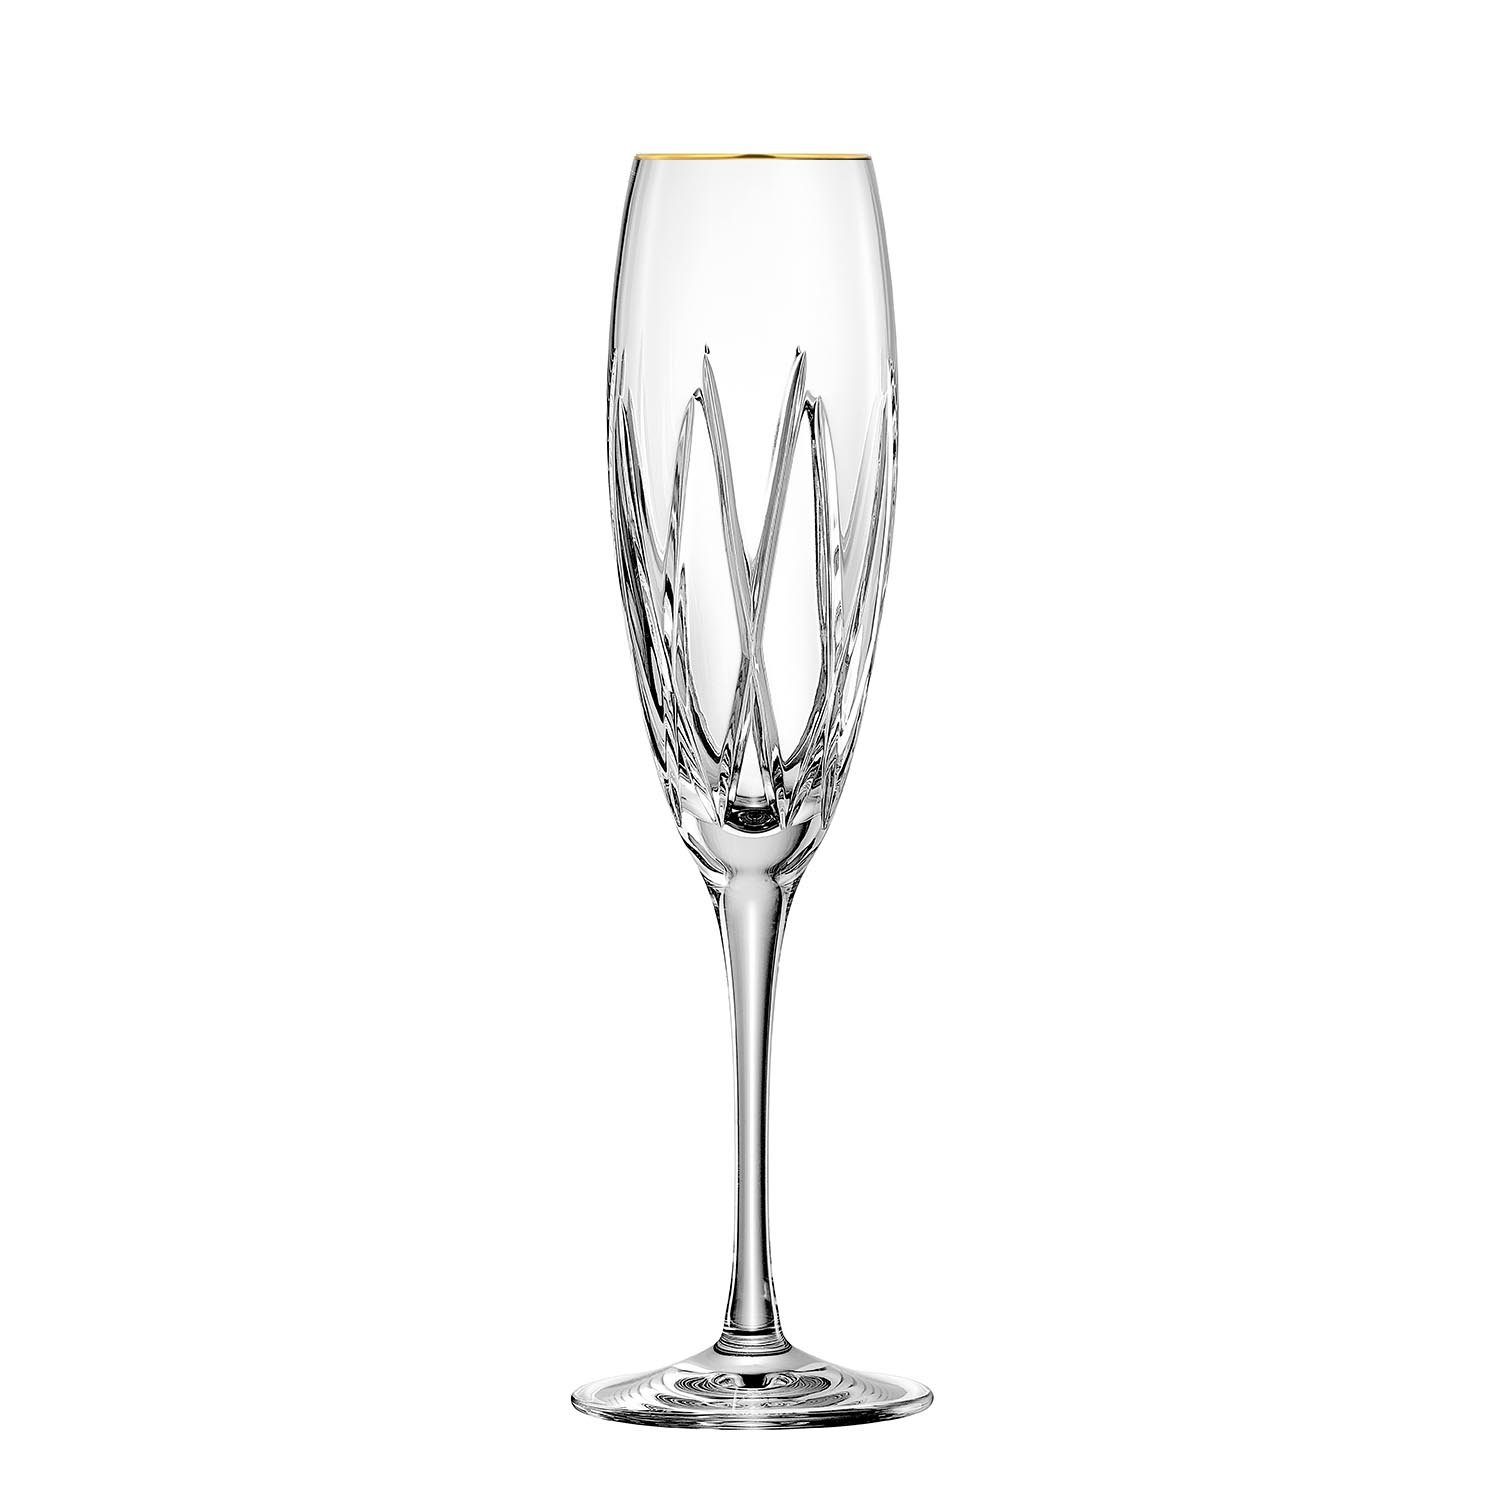 ARNSTADT KRISTALL Champagnerglas »Sektglas London Gold (25 cm) -  Kristallglas mundgeblasen · von Hand geschliffen · 24 K Goldrand«